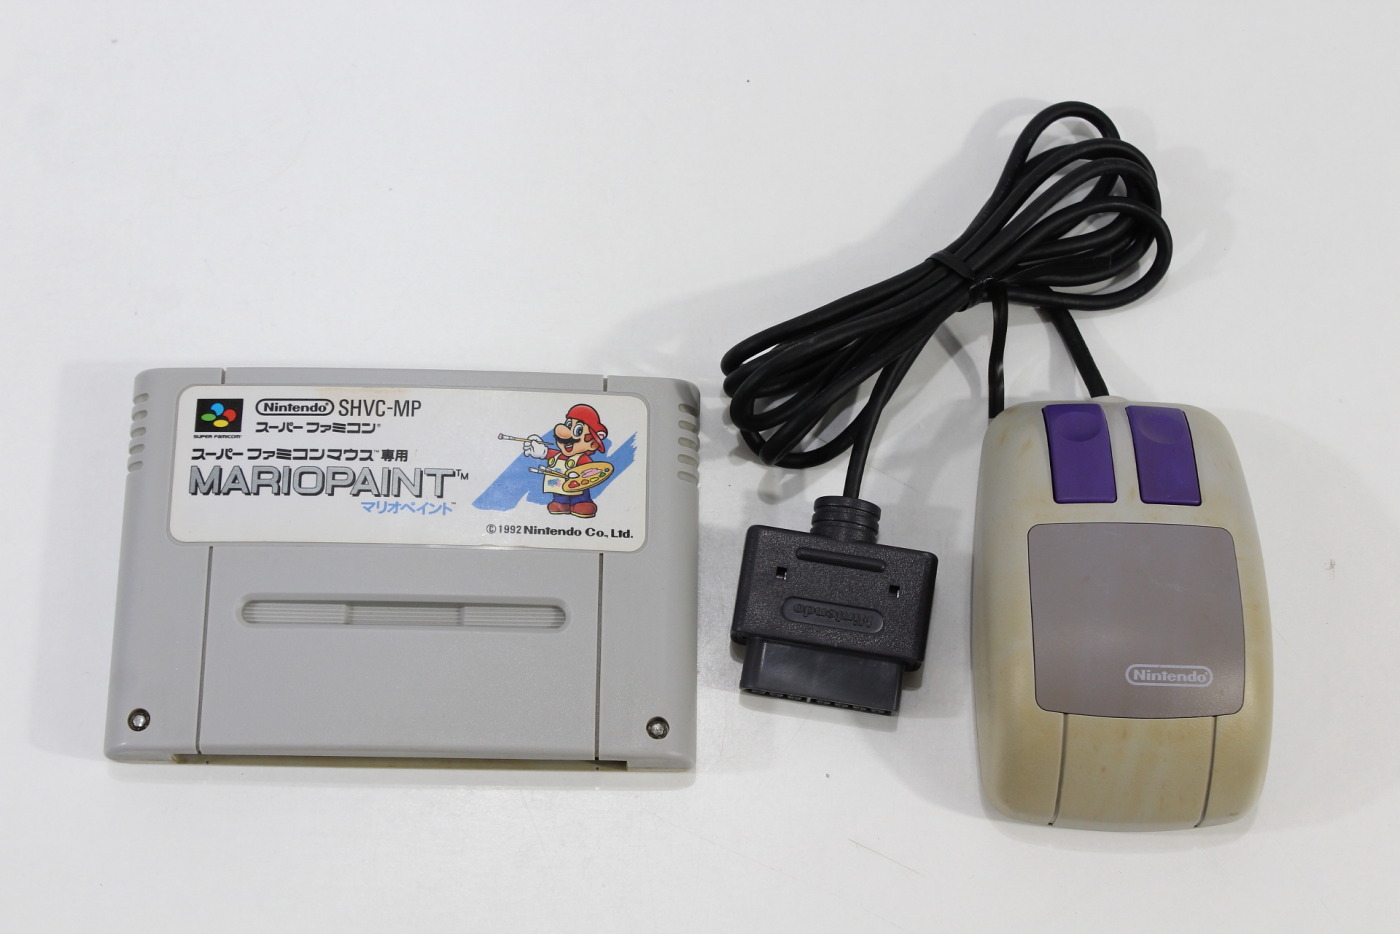 Jogo Super Nintendo SNES - Mario Paint c/ Mouse - FF Games - Videogames  Retrô